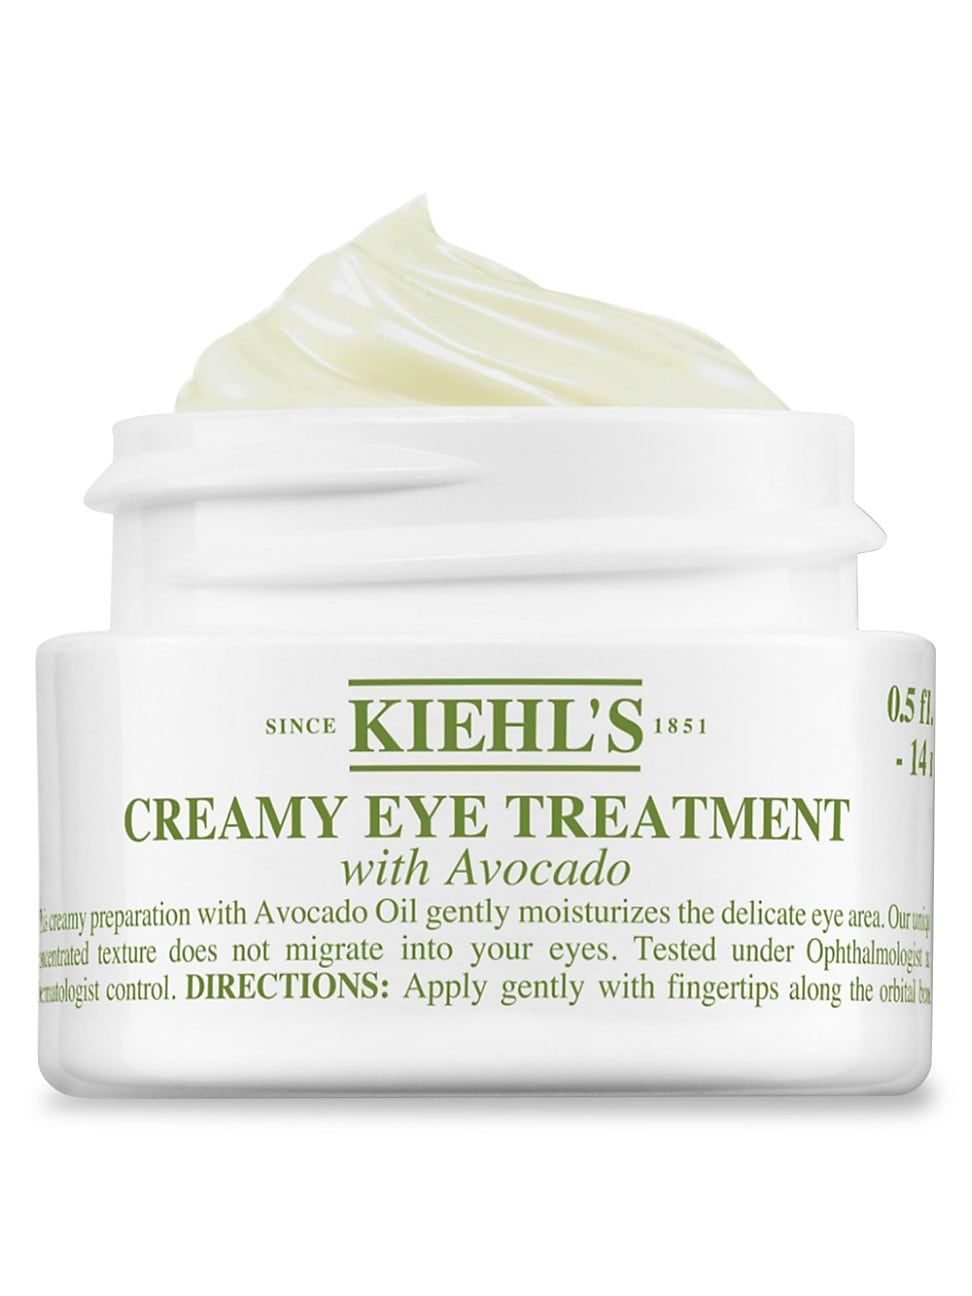 Kiehl's Since 1851 Creamy Eye Treatment with Avocado - Size 1.7 oz. & Under | Saks Fifth Avenue